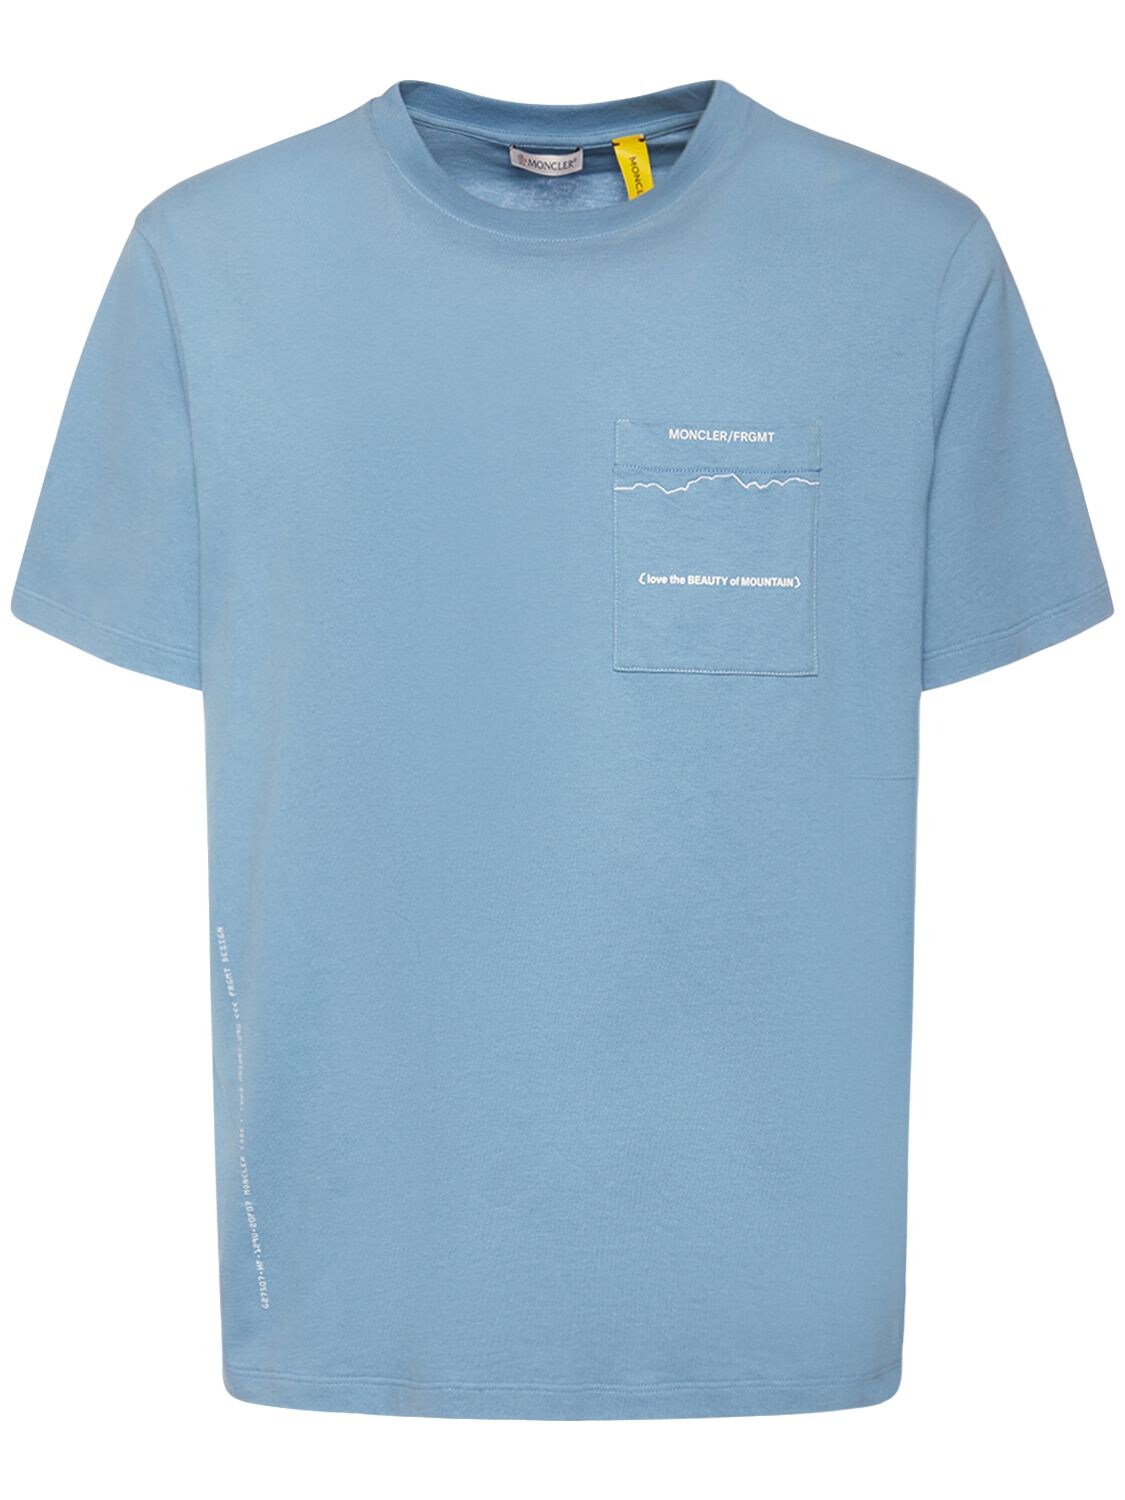 Moncler X Frgmt Mountain Jersey T-shirt – WOMEN > CLOTHING > T-SHIRTS